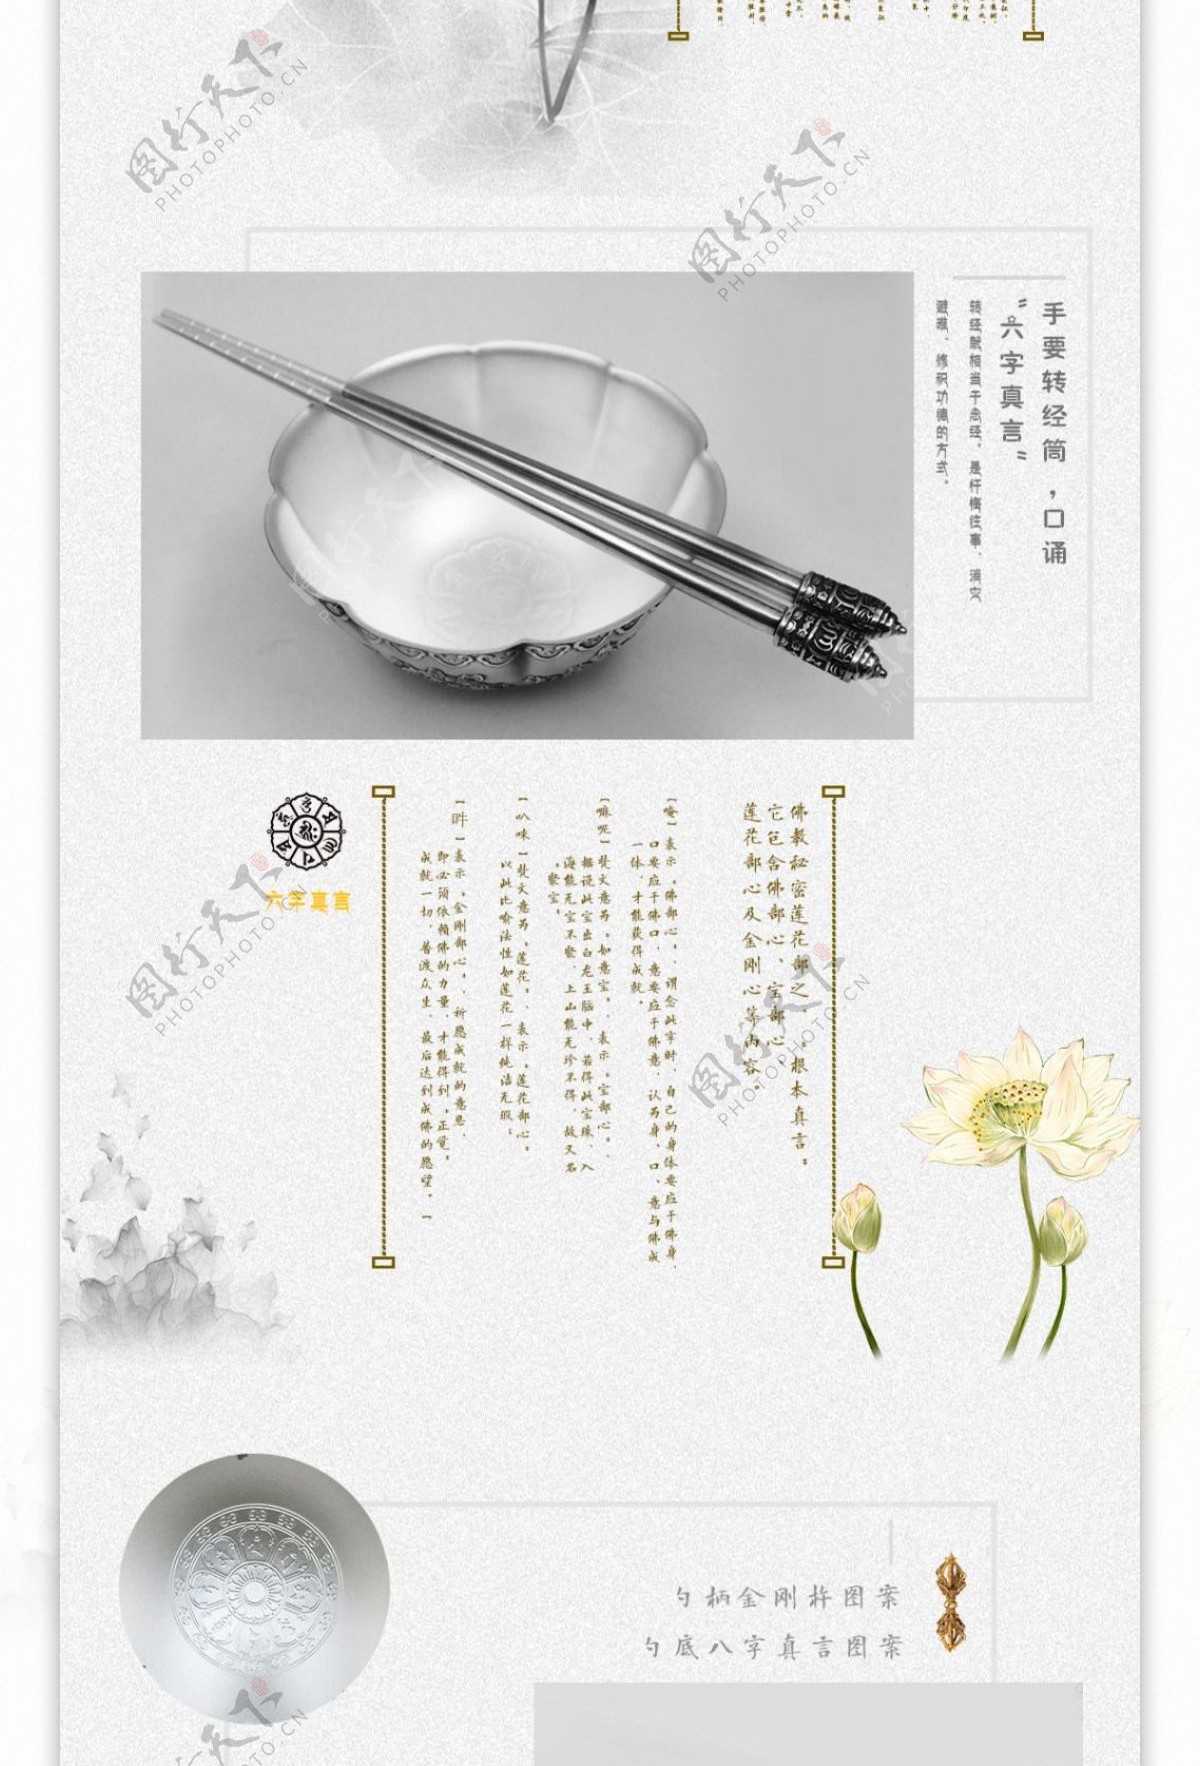 藏传佛教银器碗筷勺淘宝详情页